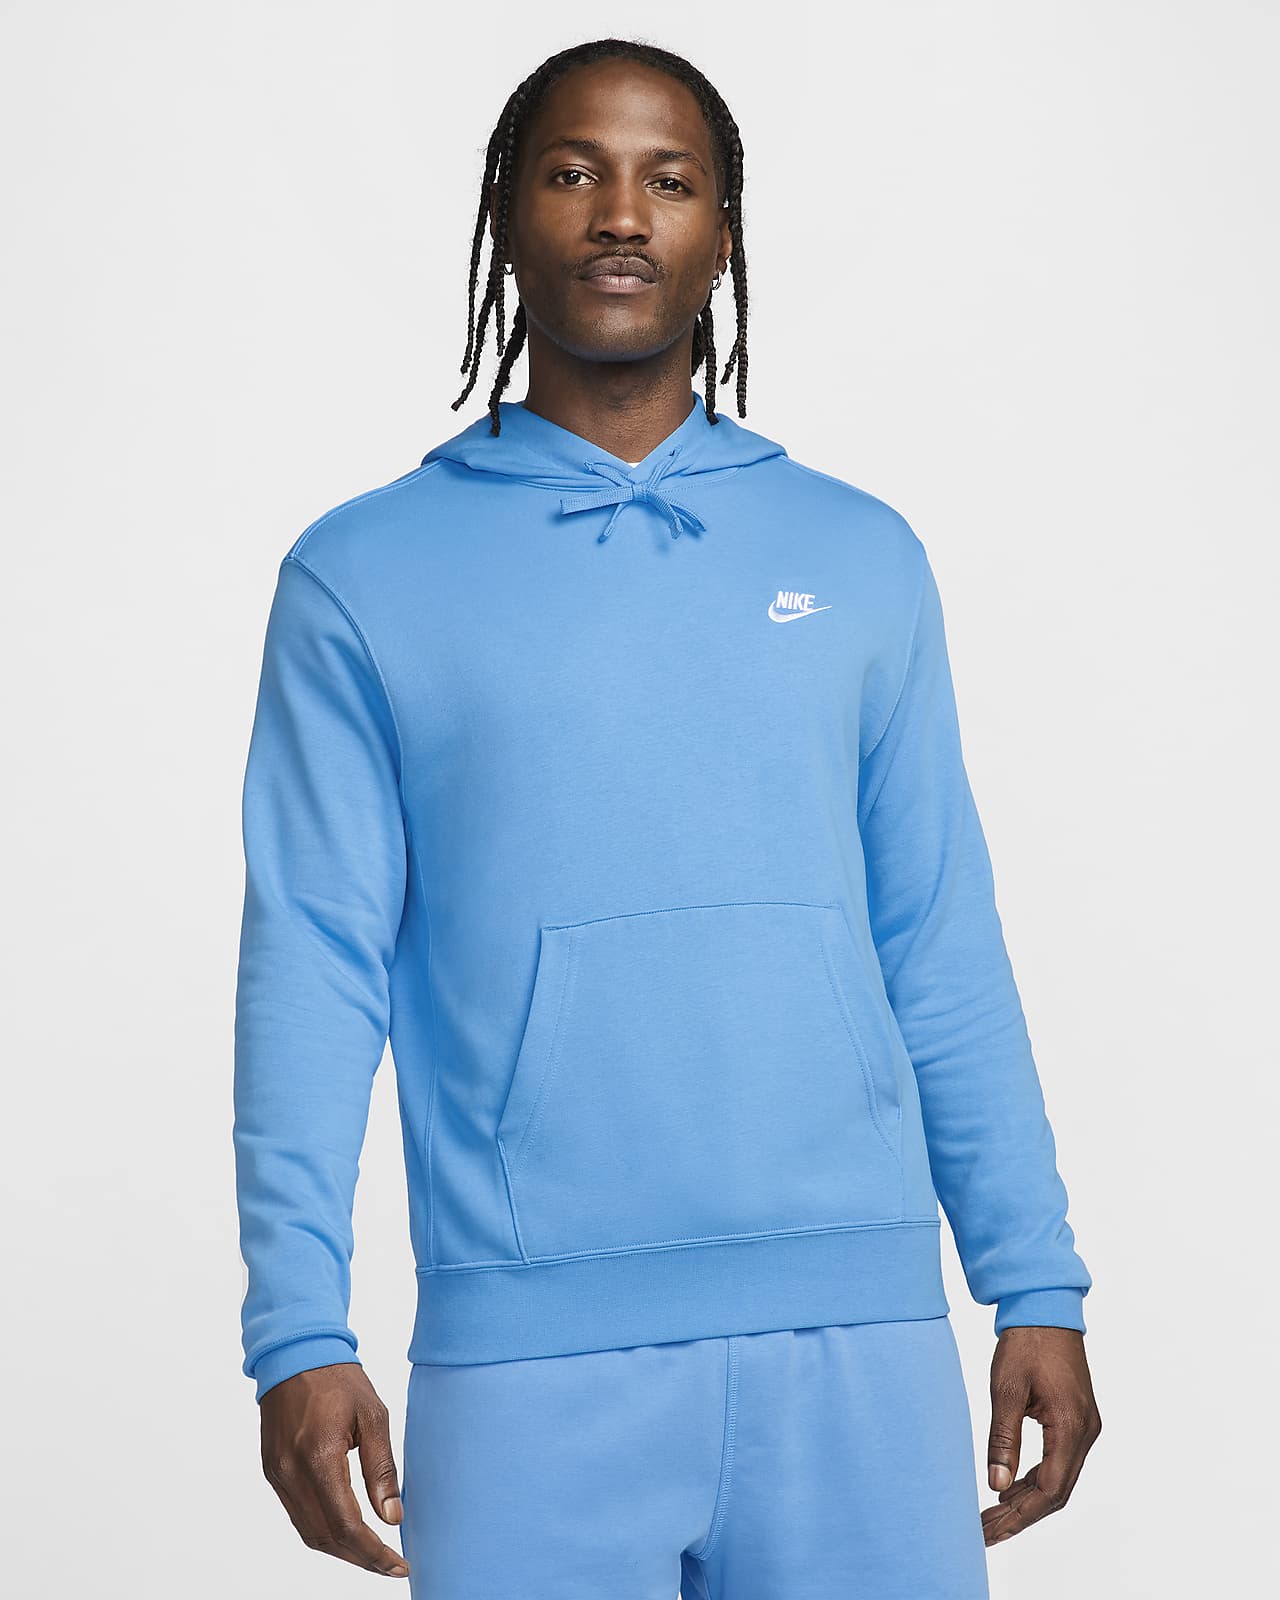 Felpa pullover con cappuccio Nike Sportswear Club - Uomo